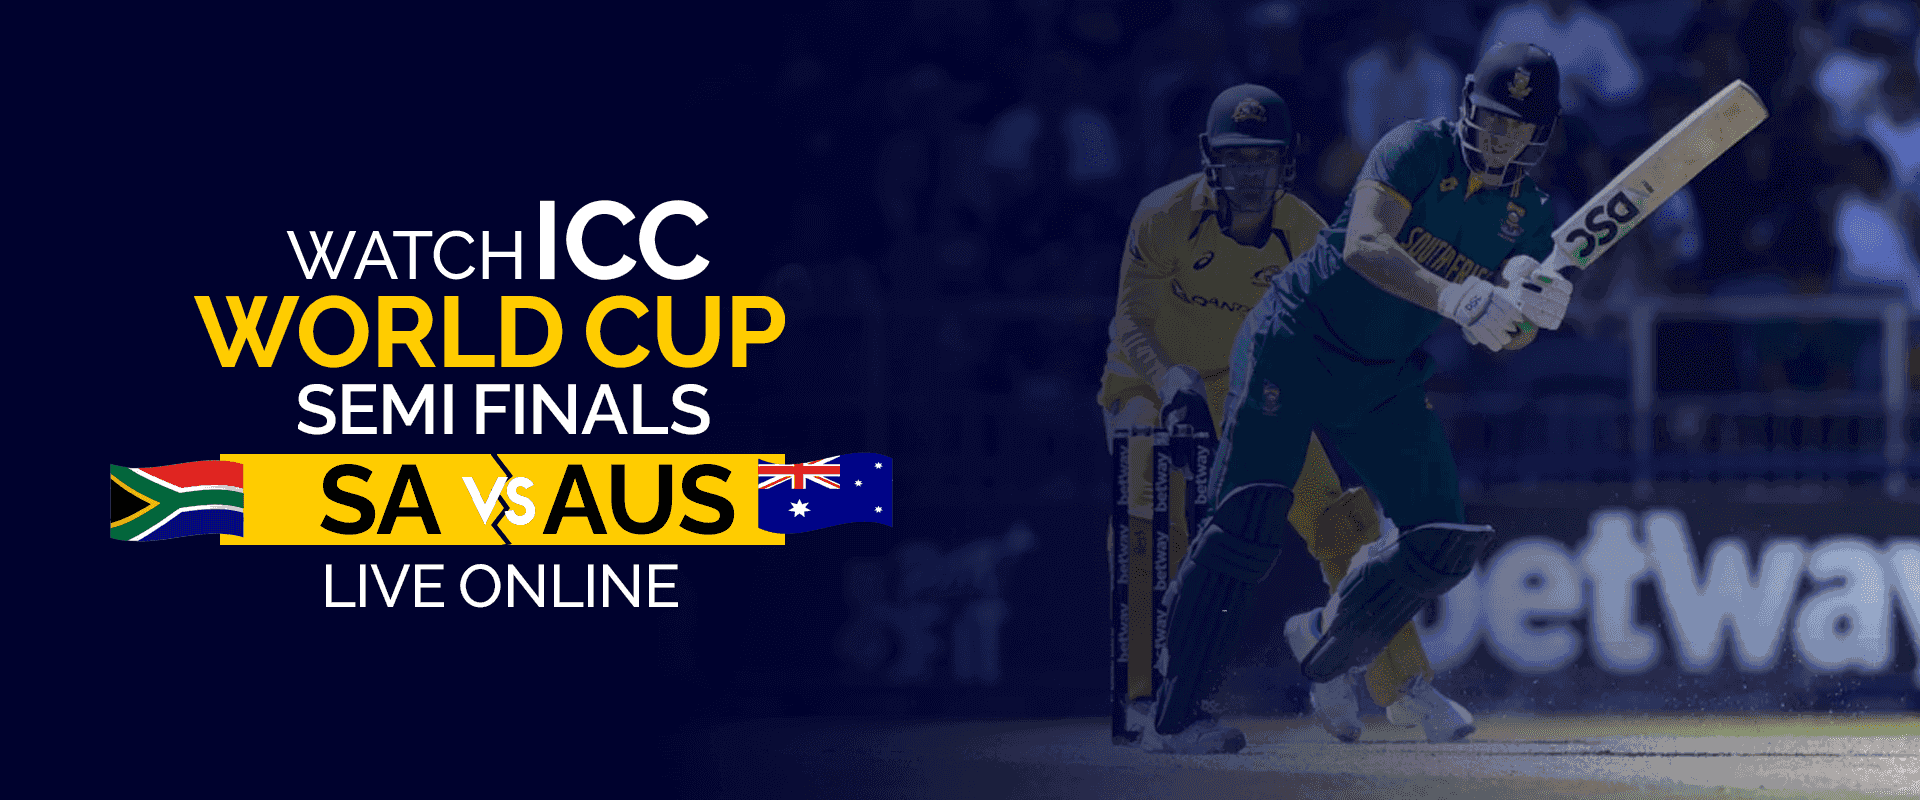 Guarda le semifinali della Coppa del mondo ICC SA vs AUS in diretta online